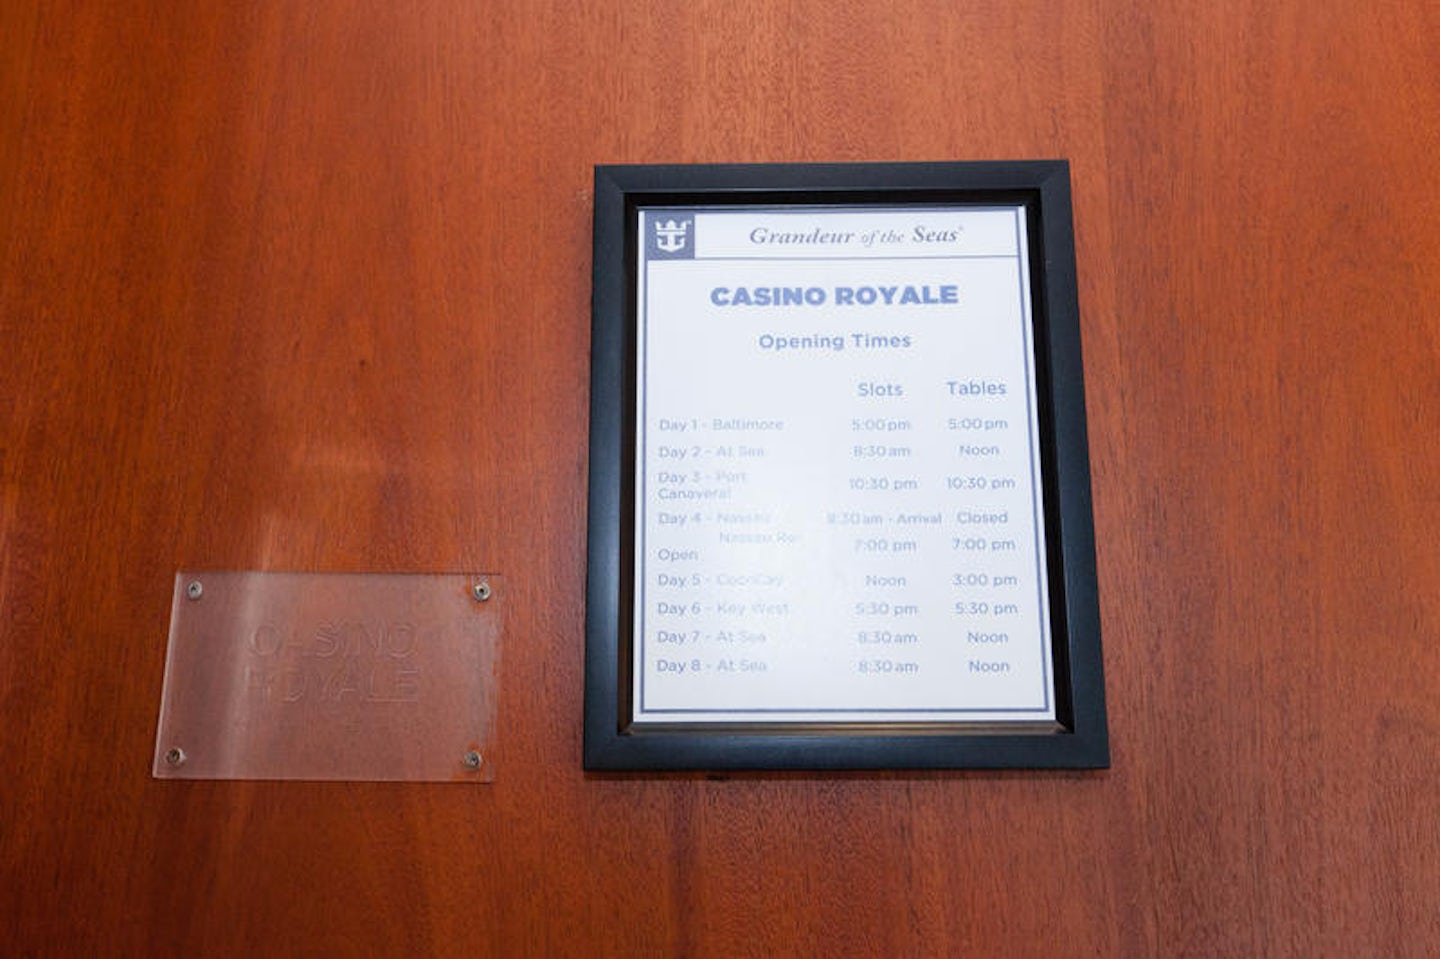 Casino Royale on Grandeur of the Seas